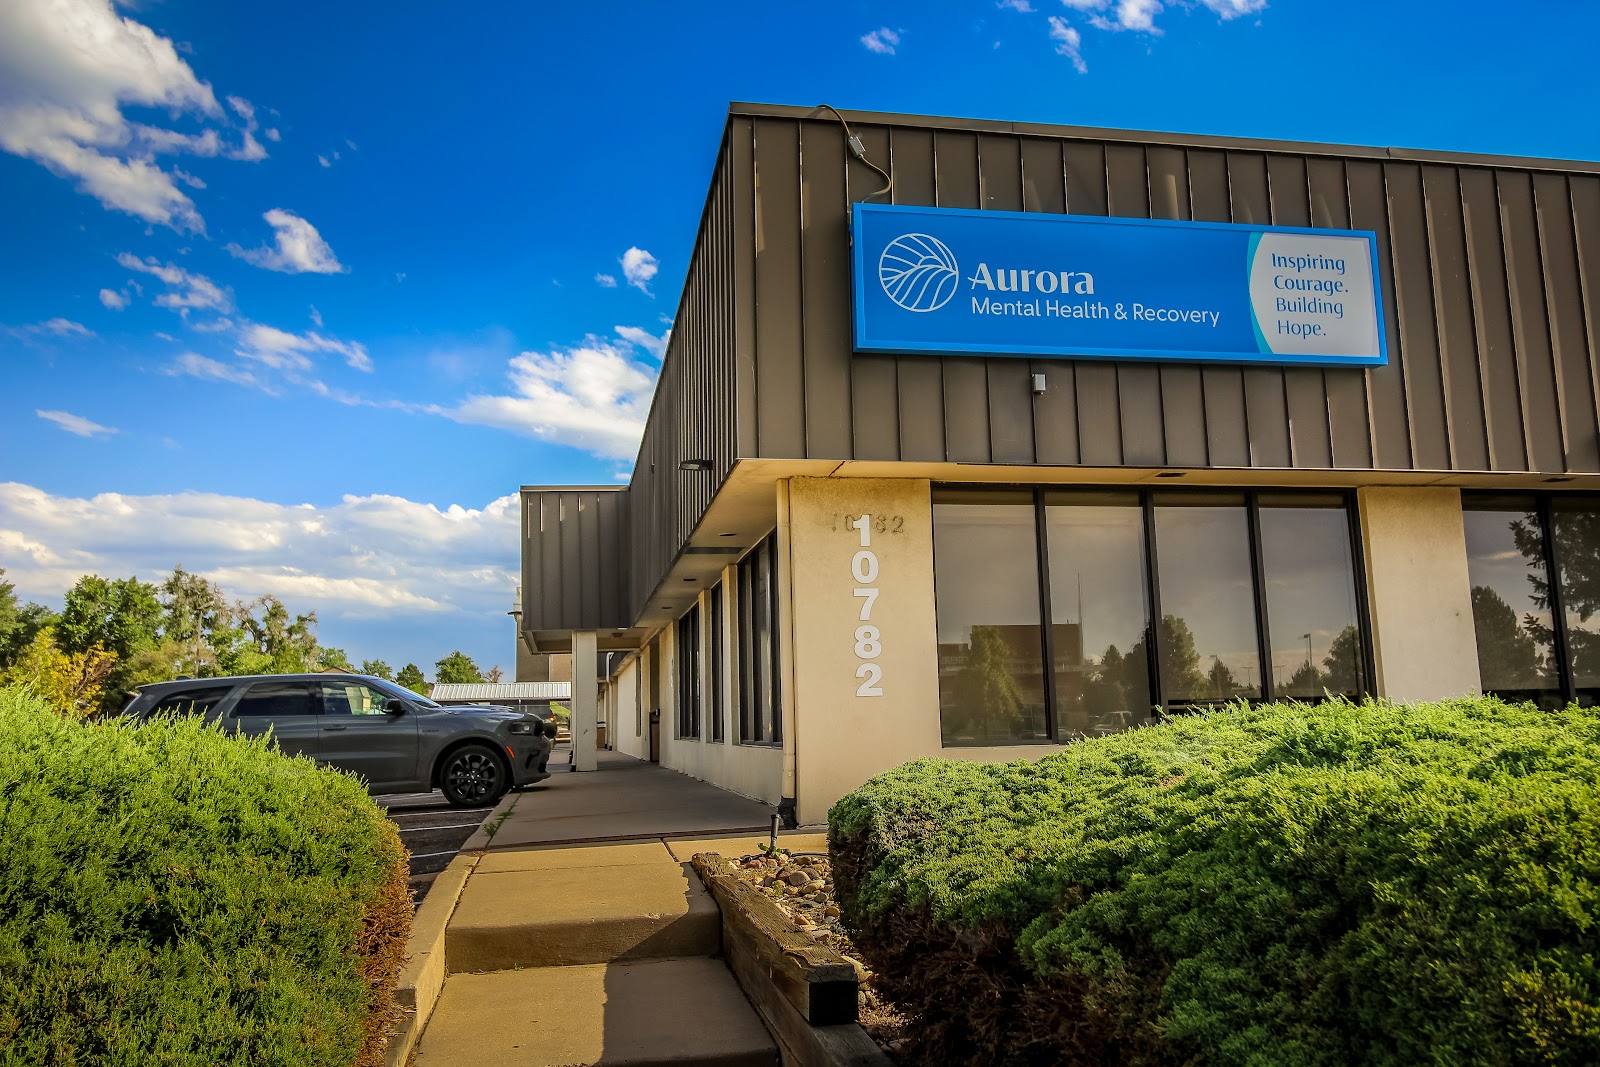 Aurora Mental Health Center - Alameda Center